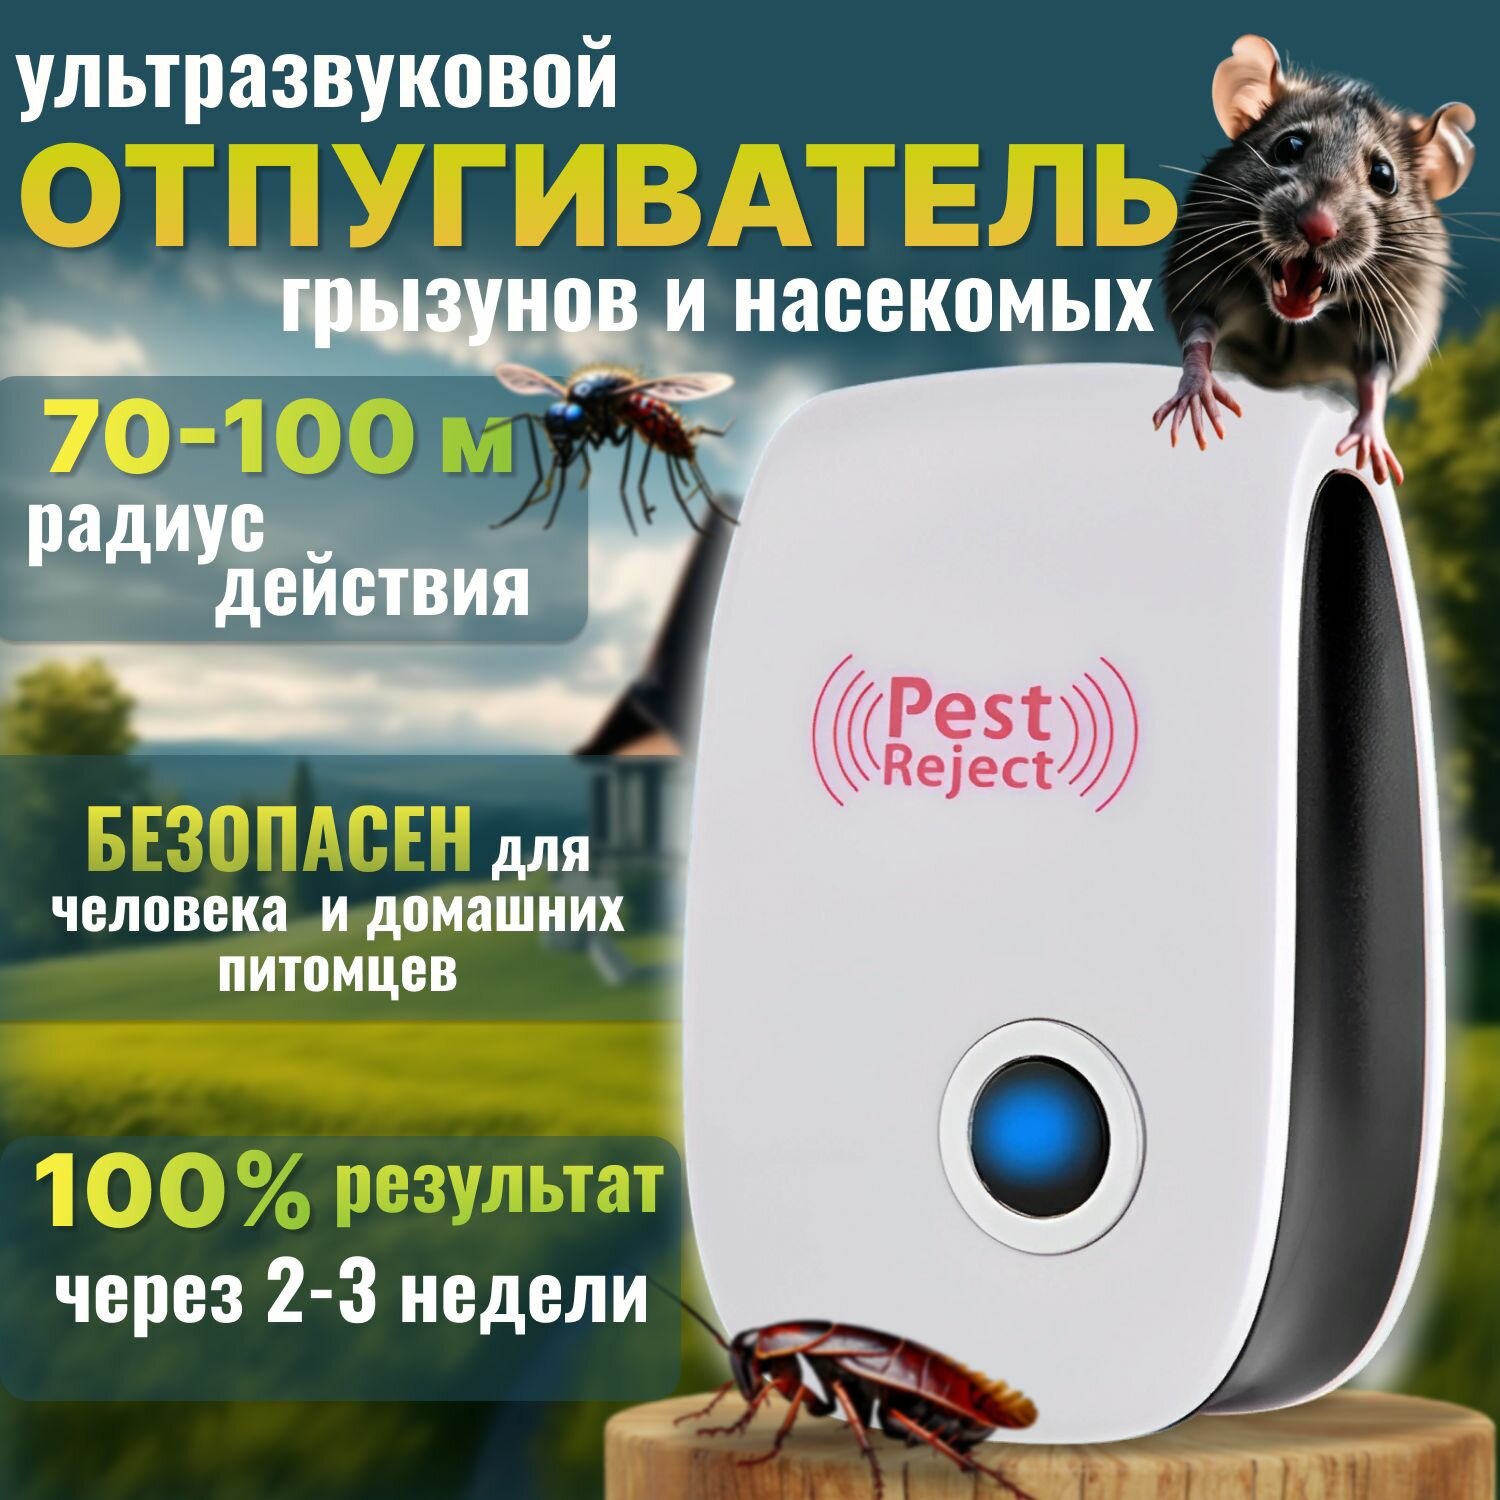 Ультразвуковой отпугиватель от крыс, мышей, тараканов, грызунов и насекомых